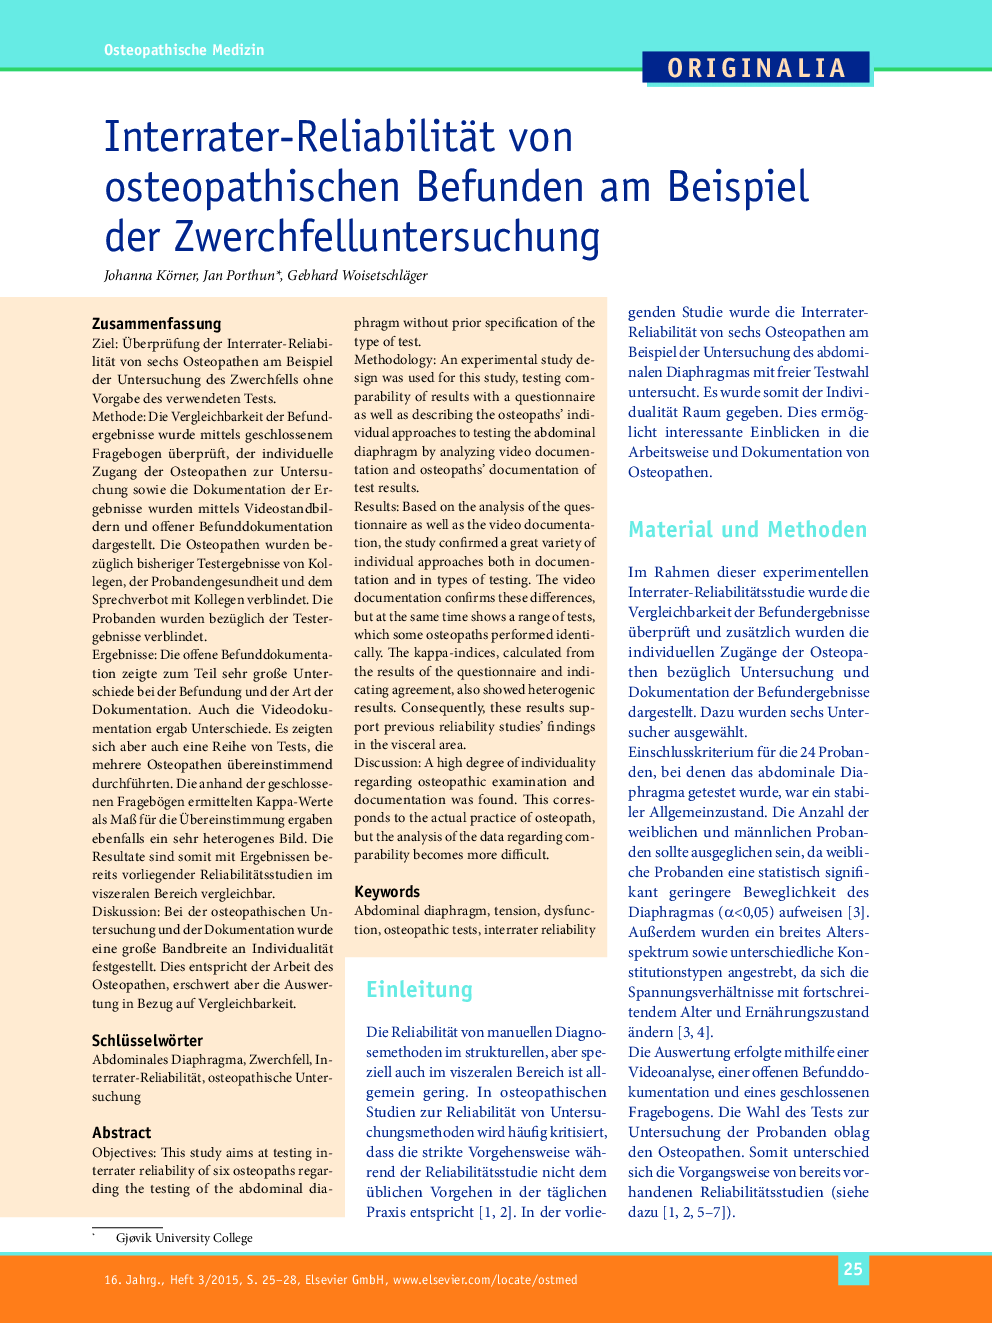 Interrater-Reliabilität von osteopathischen Befunden am Beispiel der Zwerchfelluntersuchung